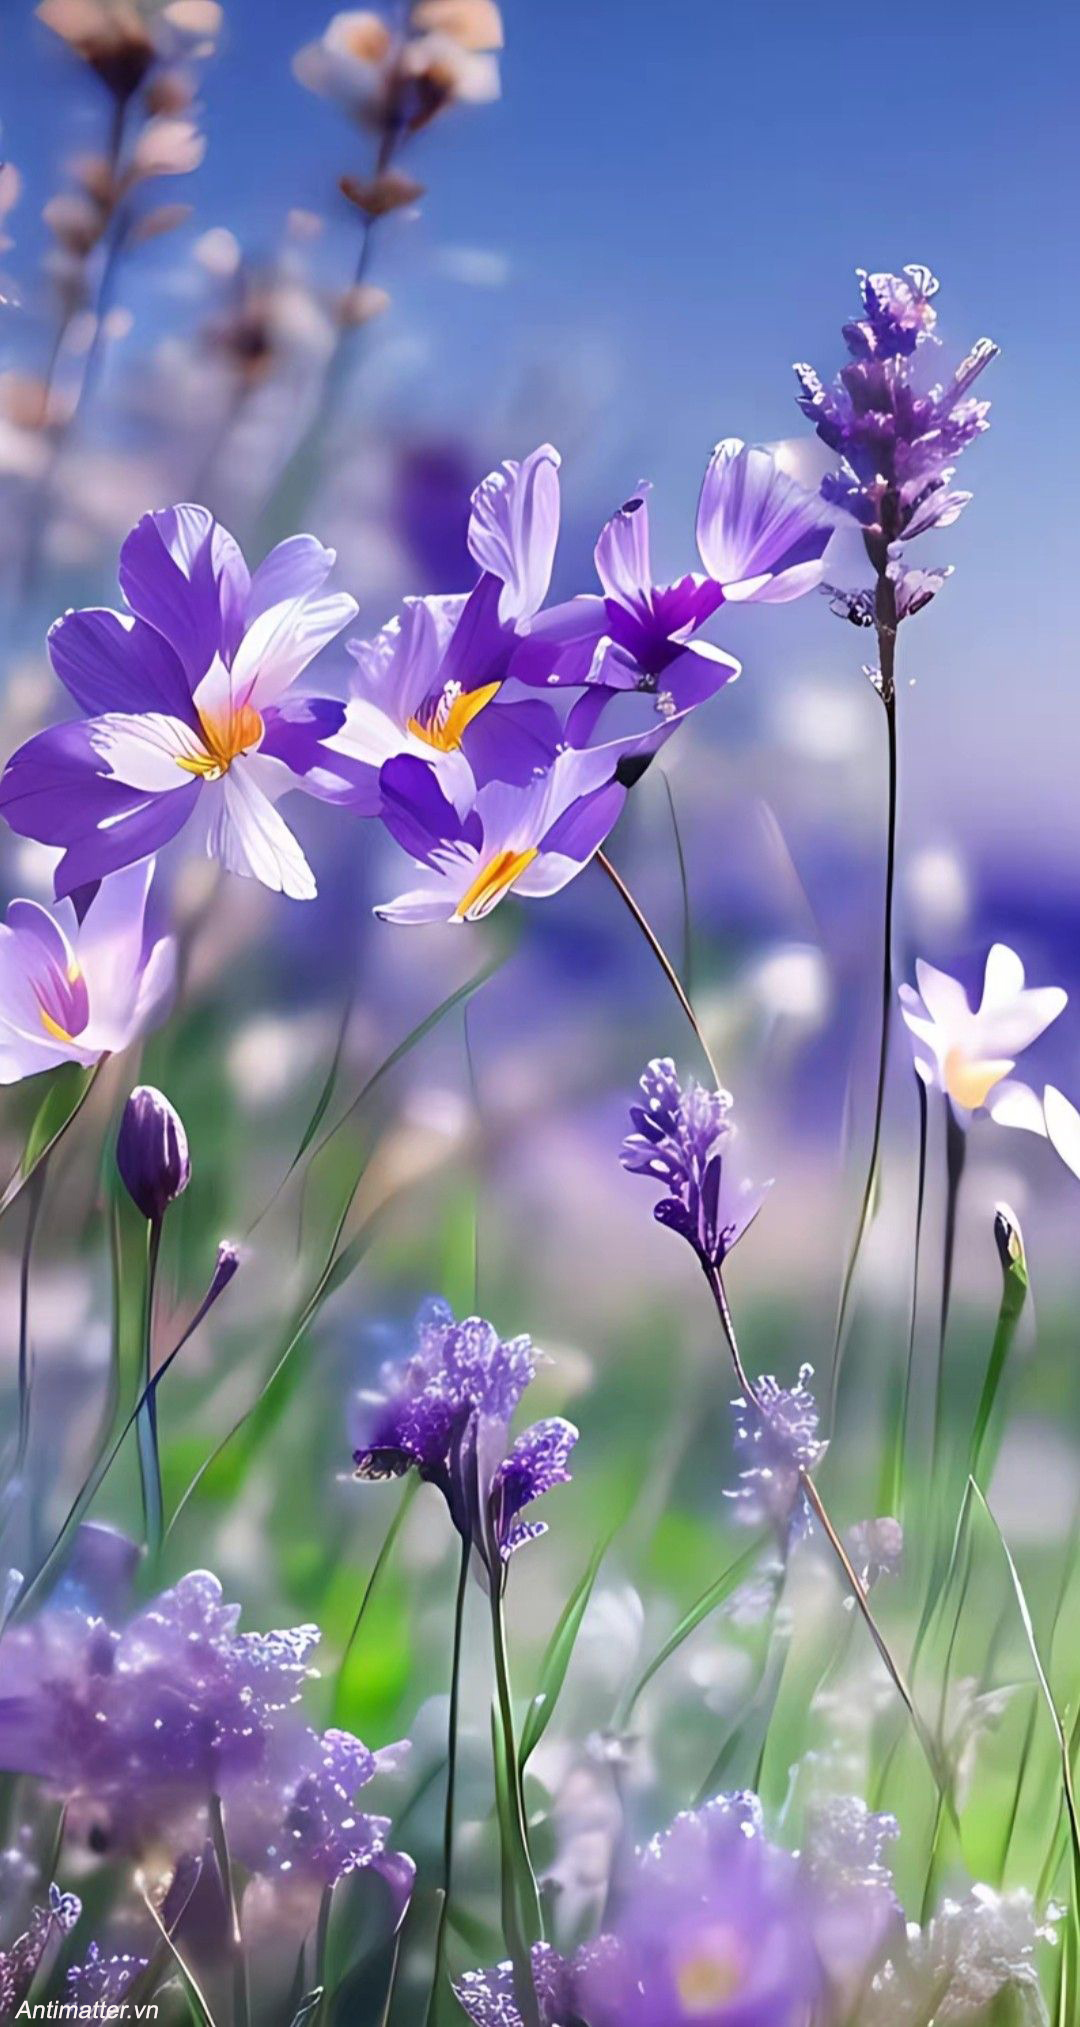 Ảnh hoa oải hương Lavender hình nền hoa oải hương đẹp